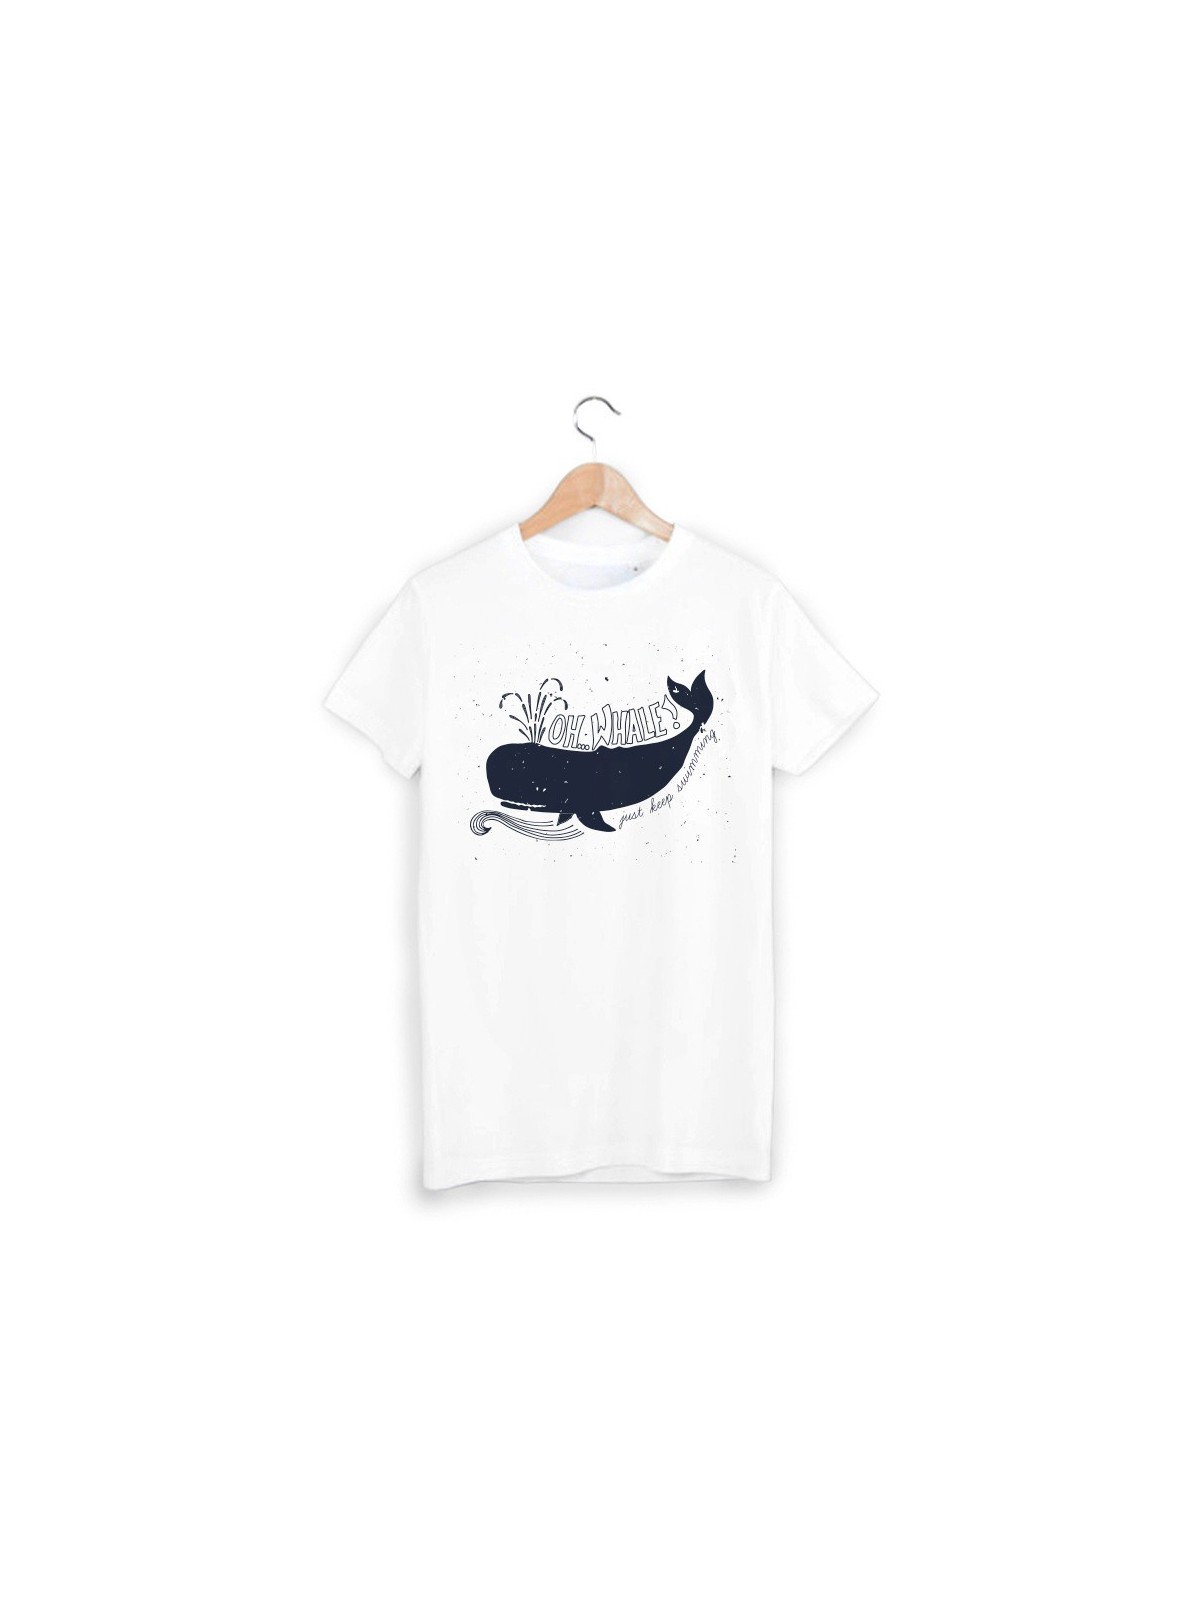 T-Shirt baleine ref 964